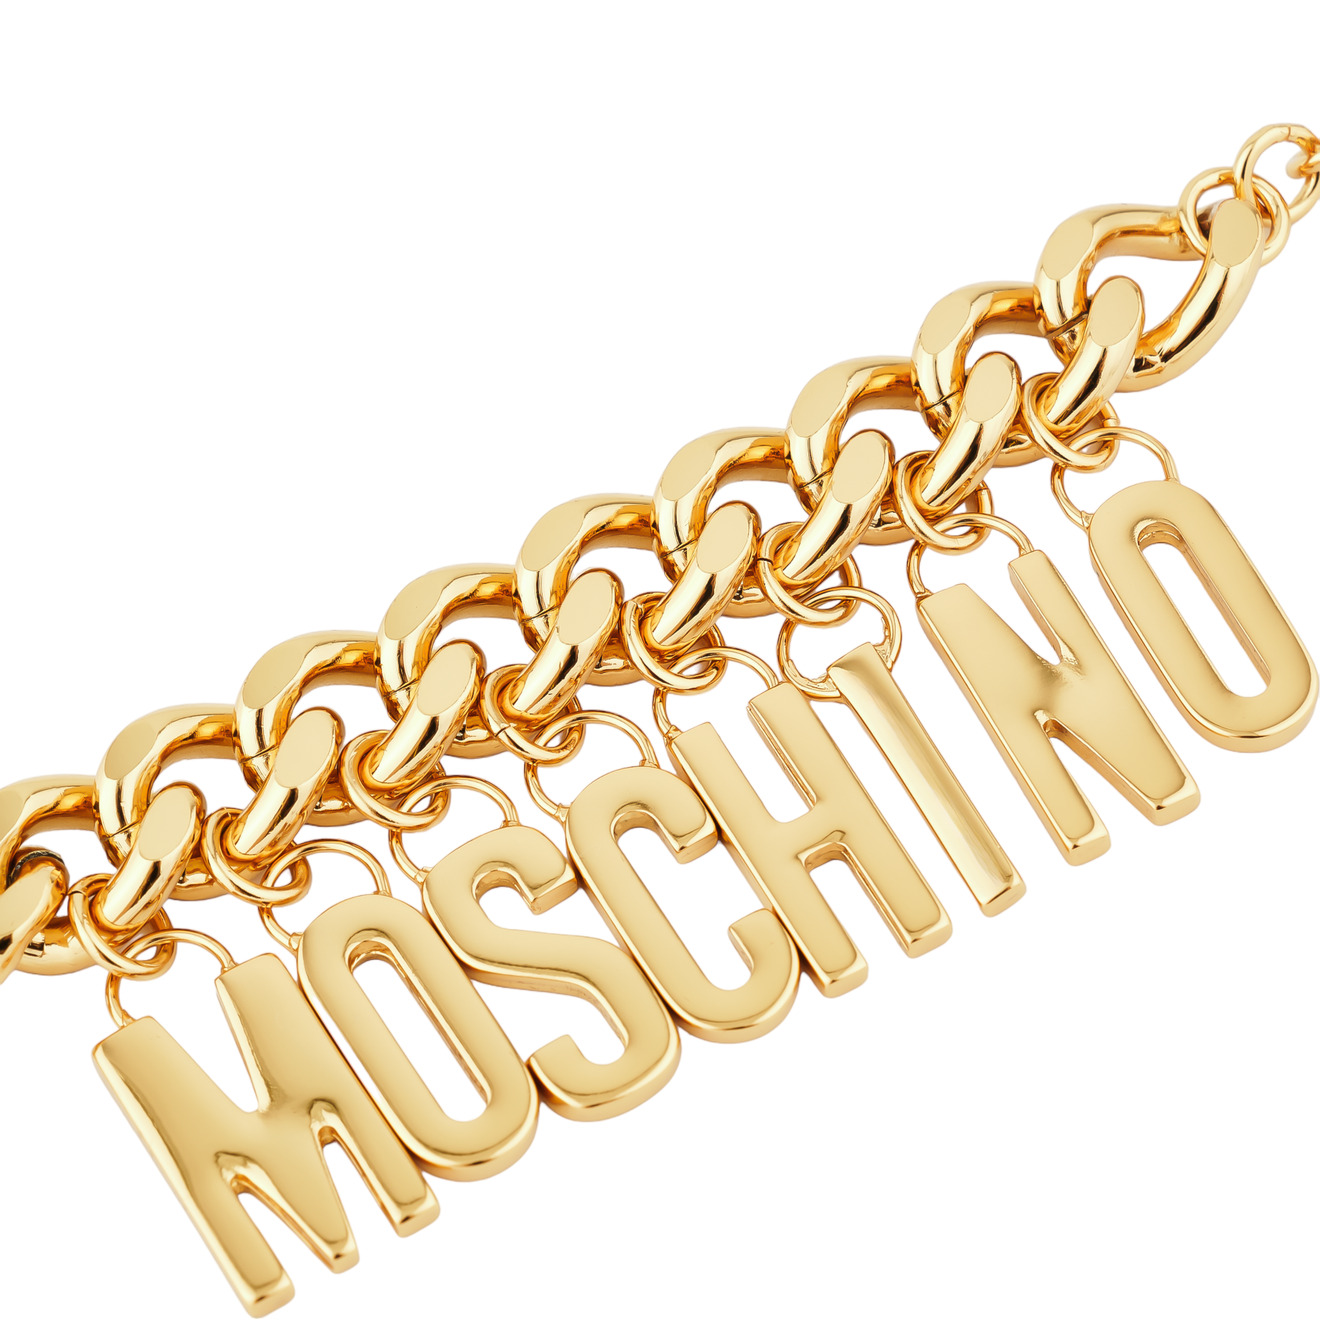 Moschino Позолоченный браслет-цепь с глянцевыми буквами бренда